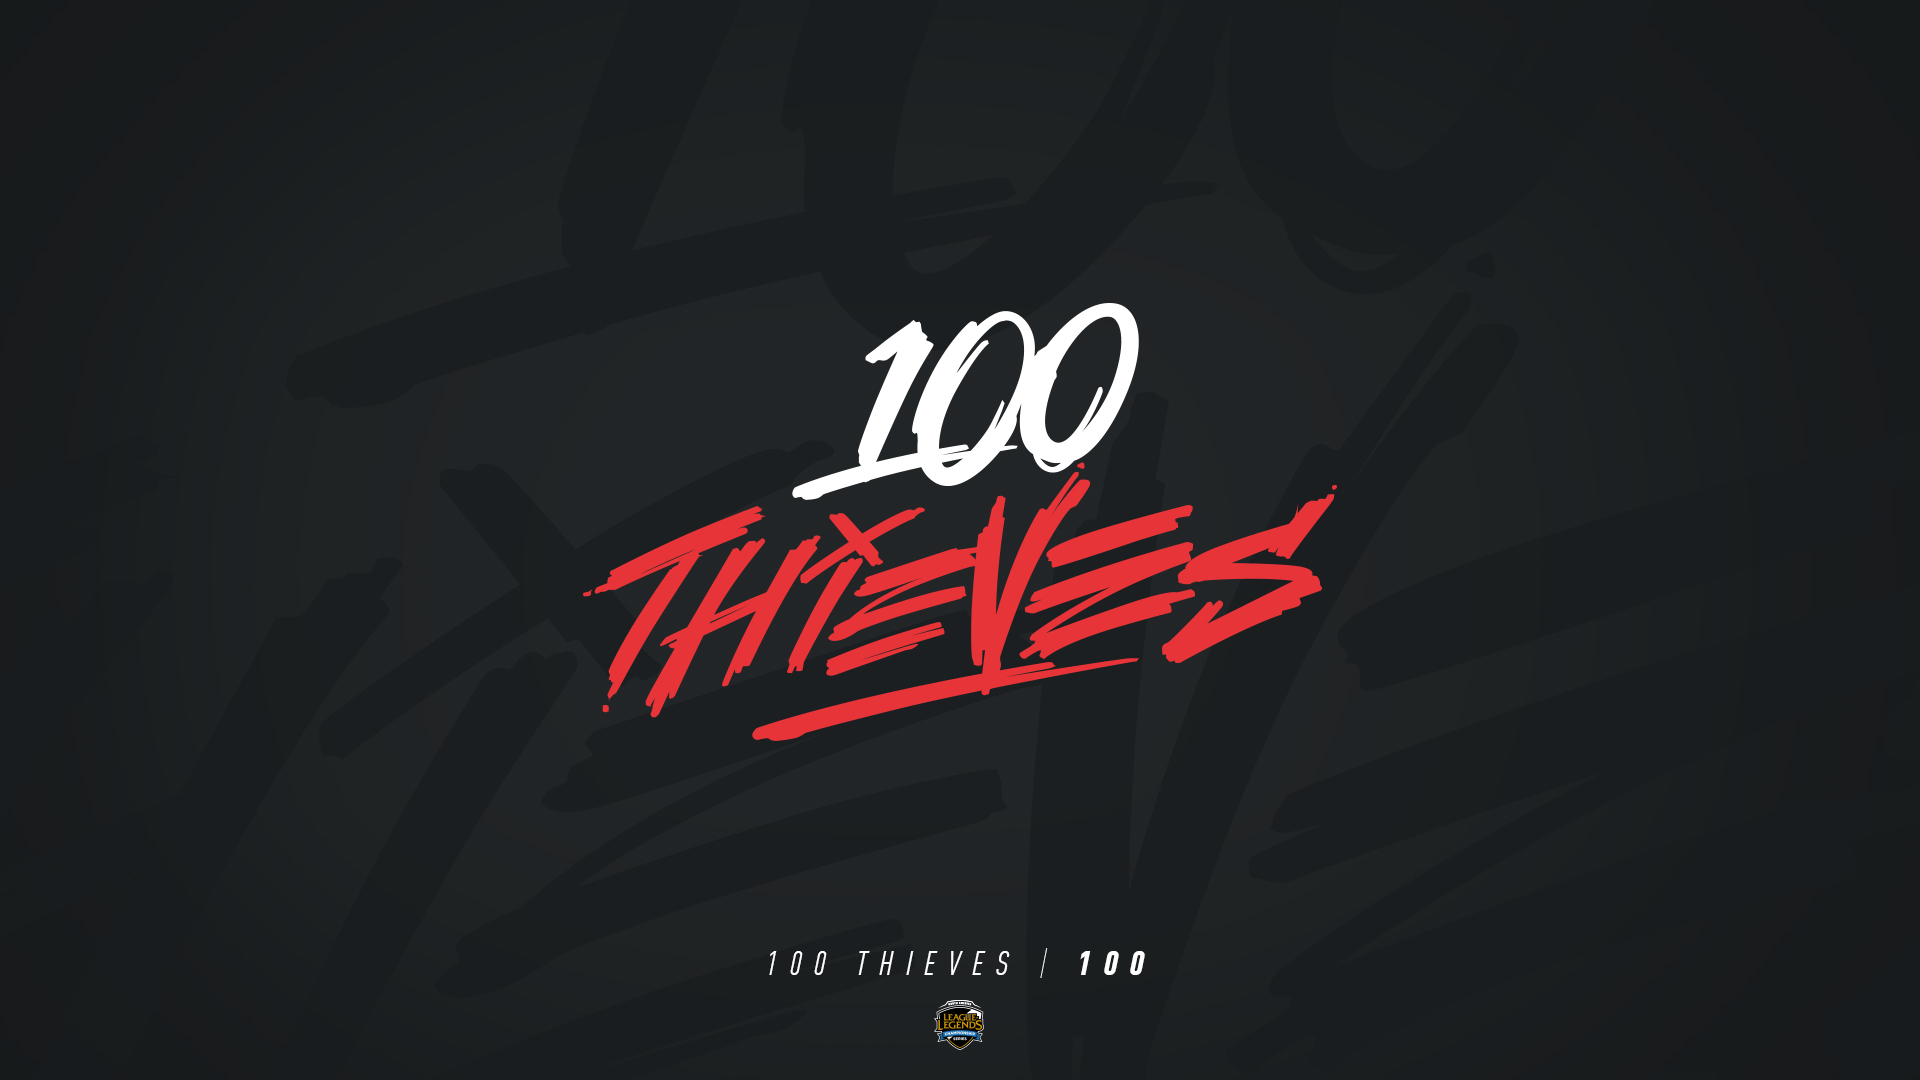 s11全球总决赛战队巡礼:江洋大盗 100 thieves-英雄联盟官方网站-腾讯